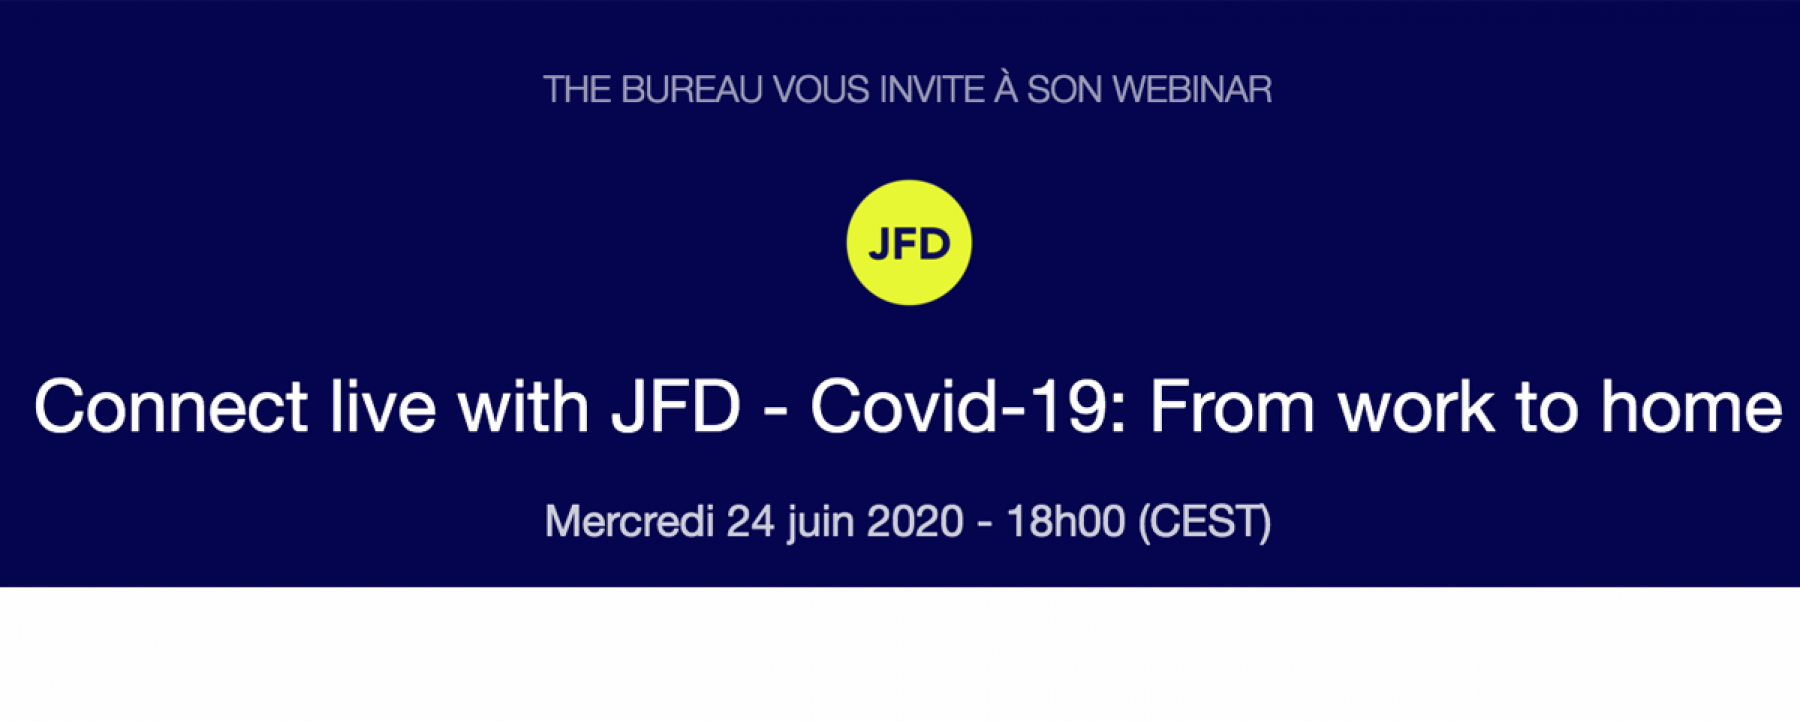 Webinar Connect Live with JFD - From Work to Home, le 24 juin 2020, organisé par The Bureau 